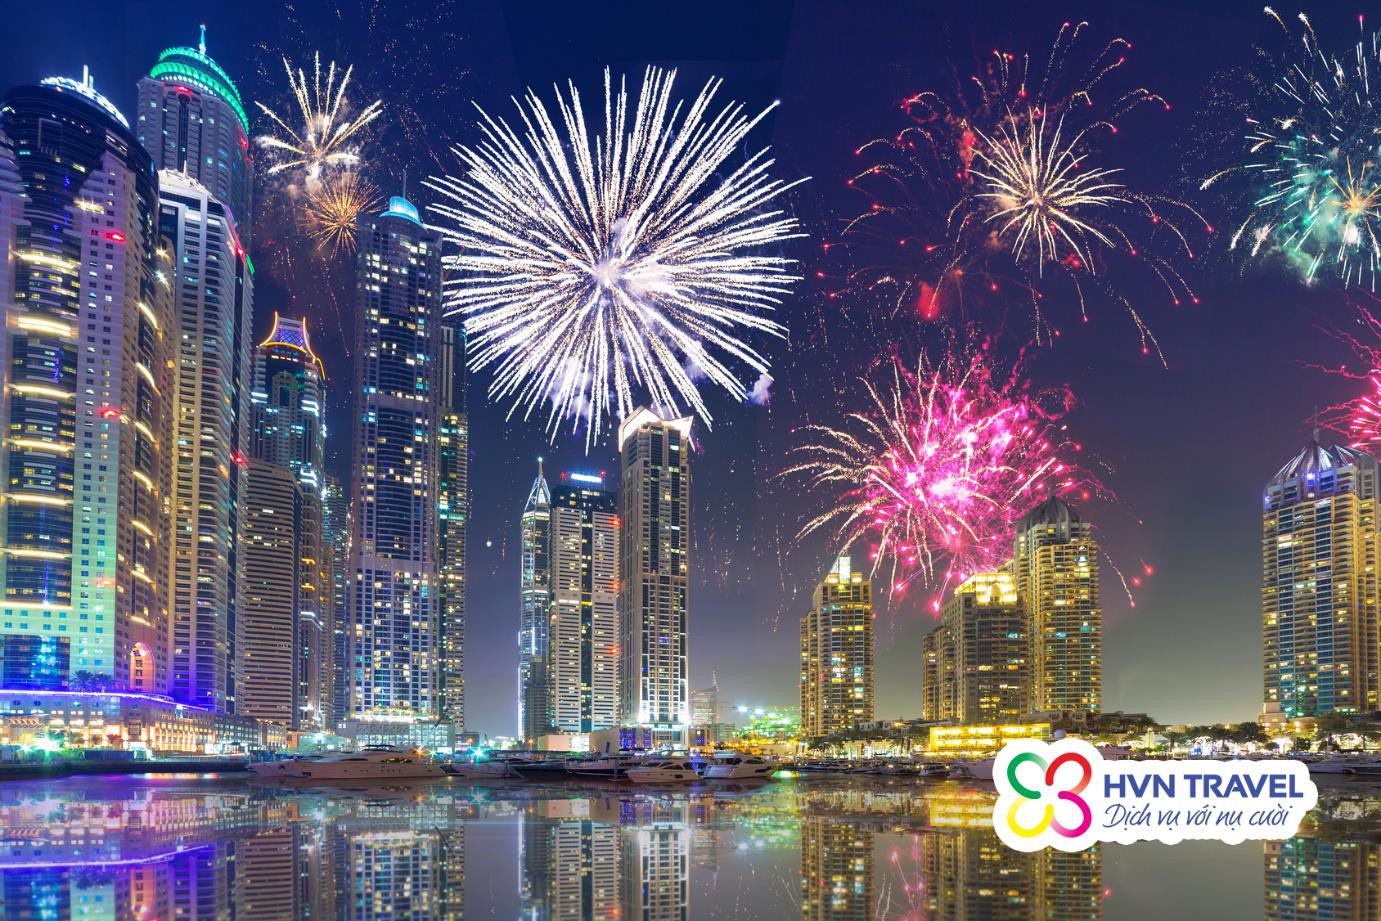 Tour du lịch Dubai Tết Dương lịch và Âm lịch trọn gói chỉ từ 27.900.000 VNĐ - Ảnh 5.